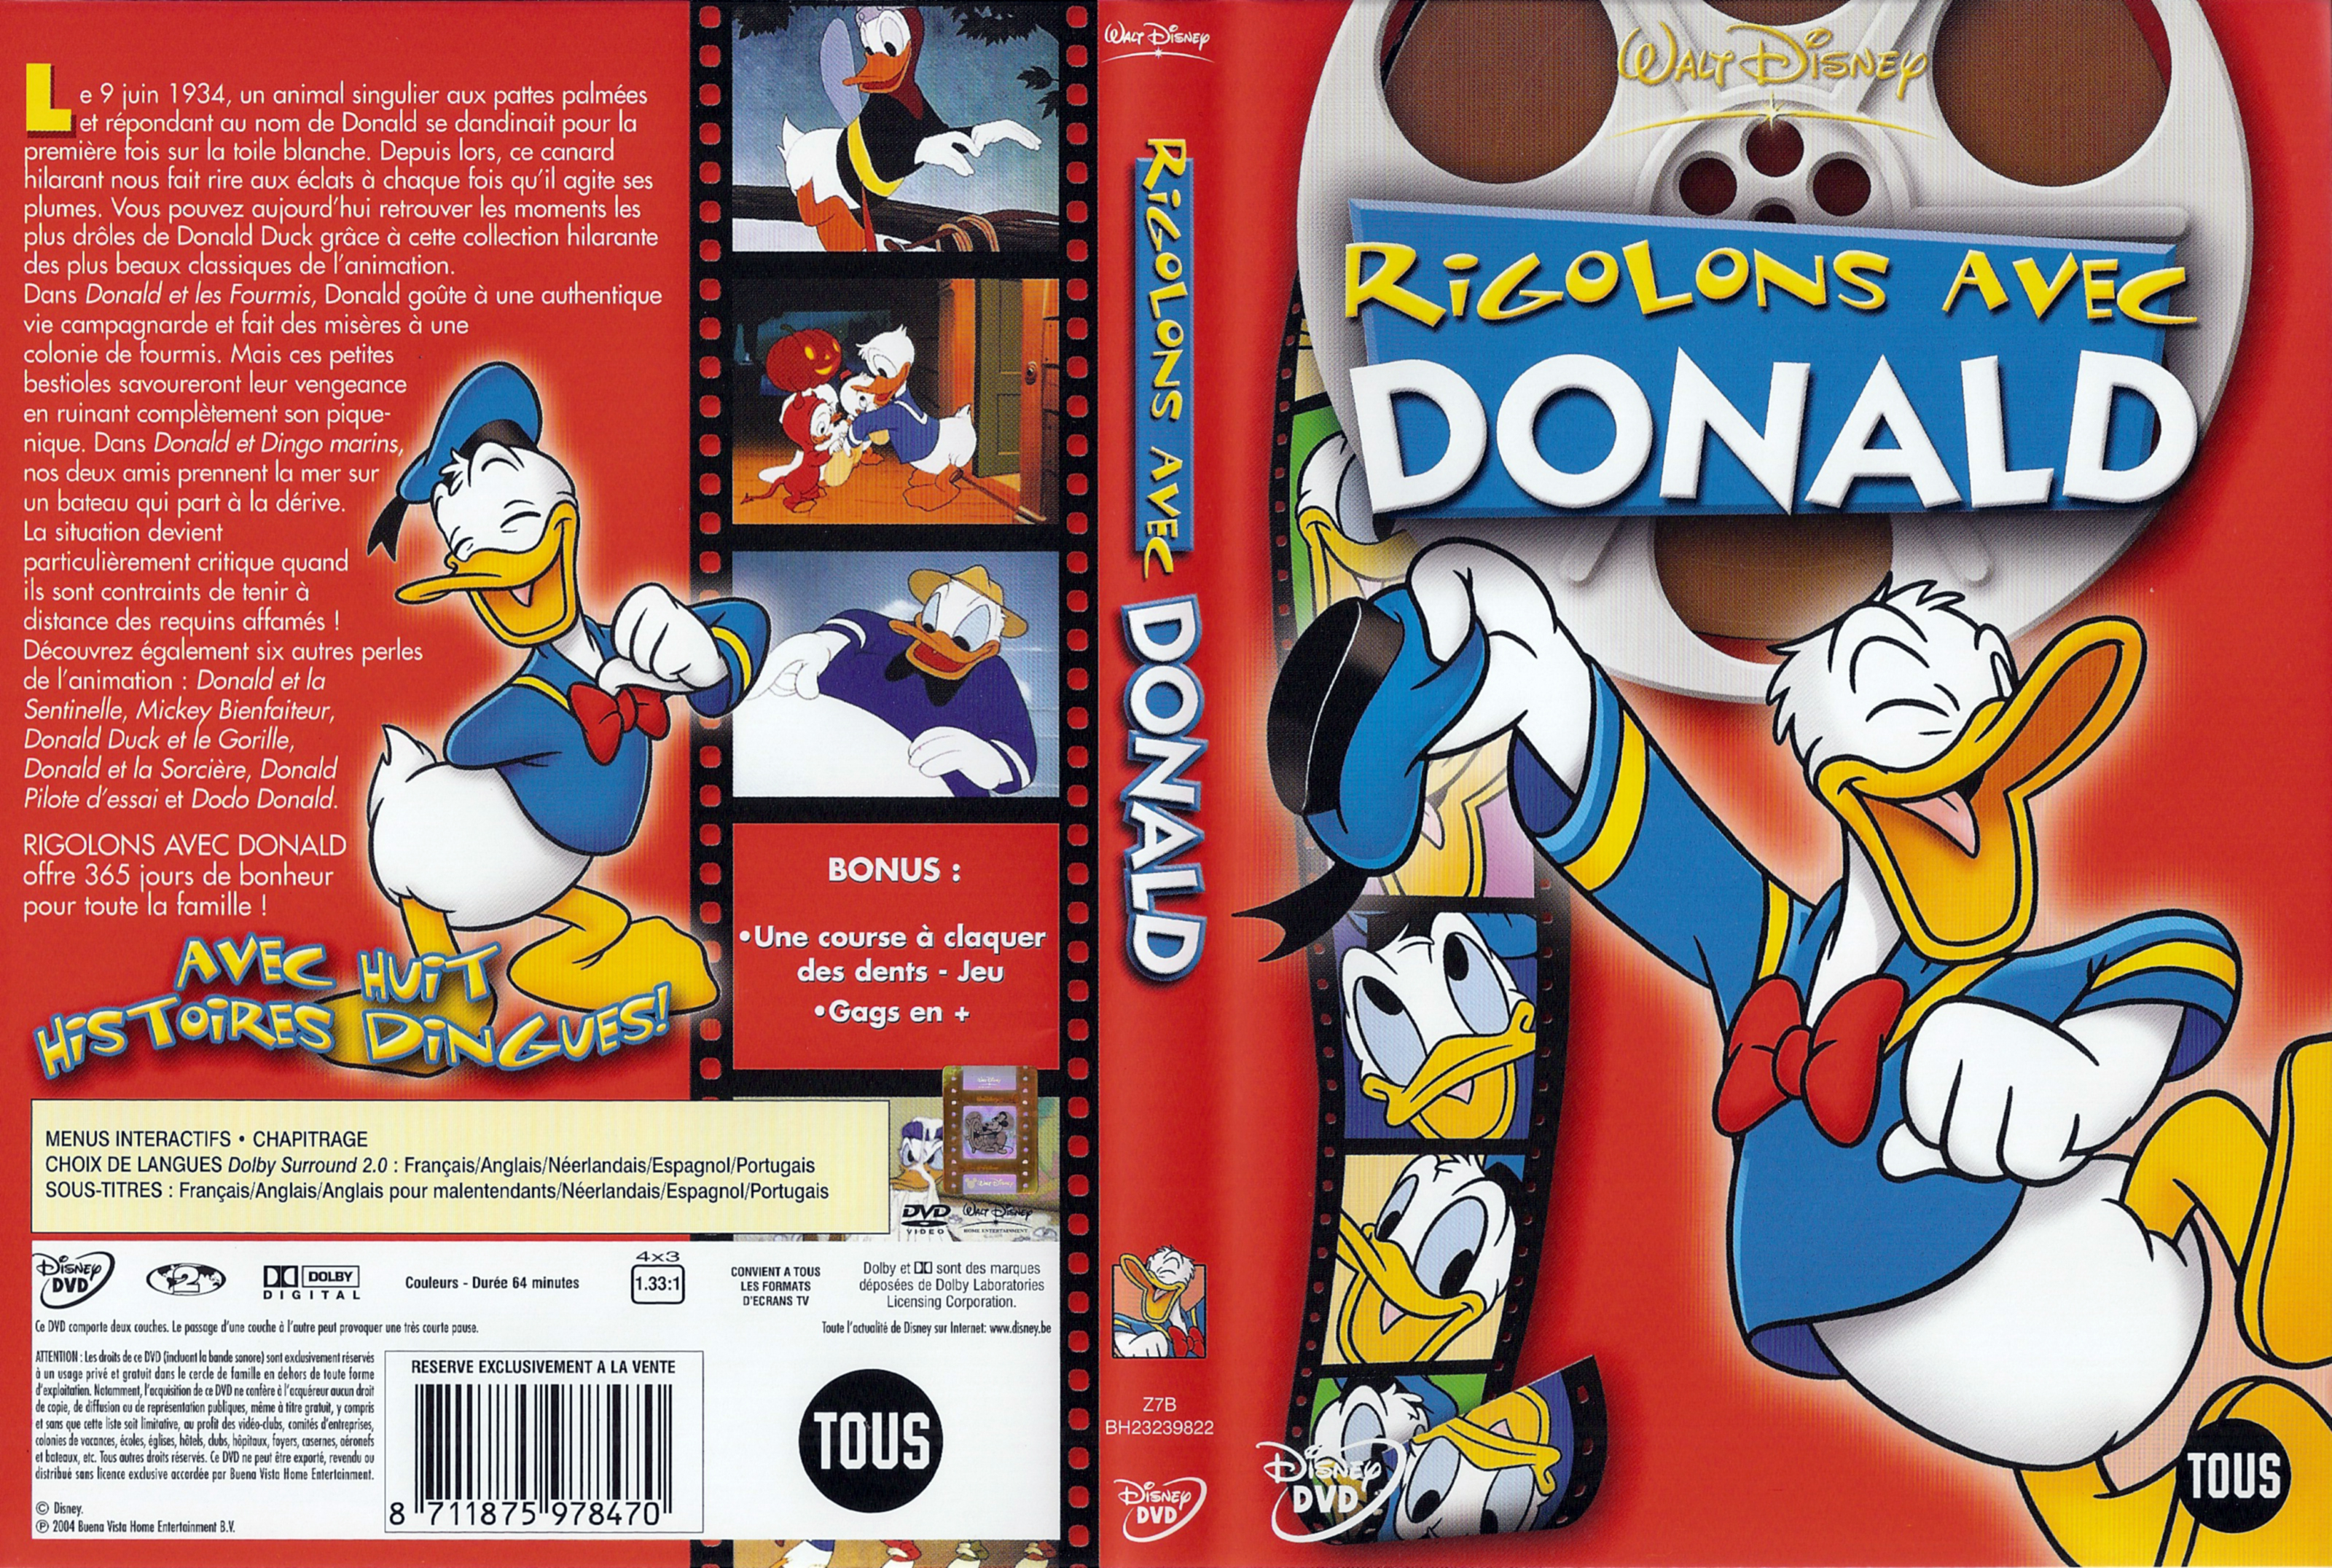 Jaquette DVD Donald Rigolons avec Donald